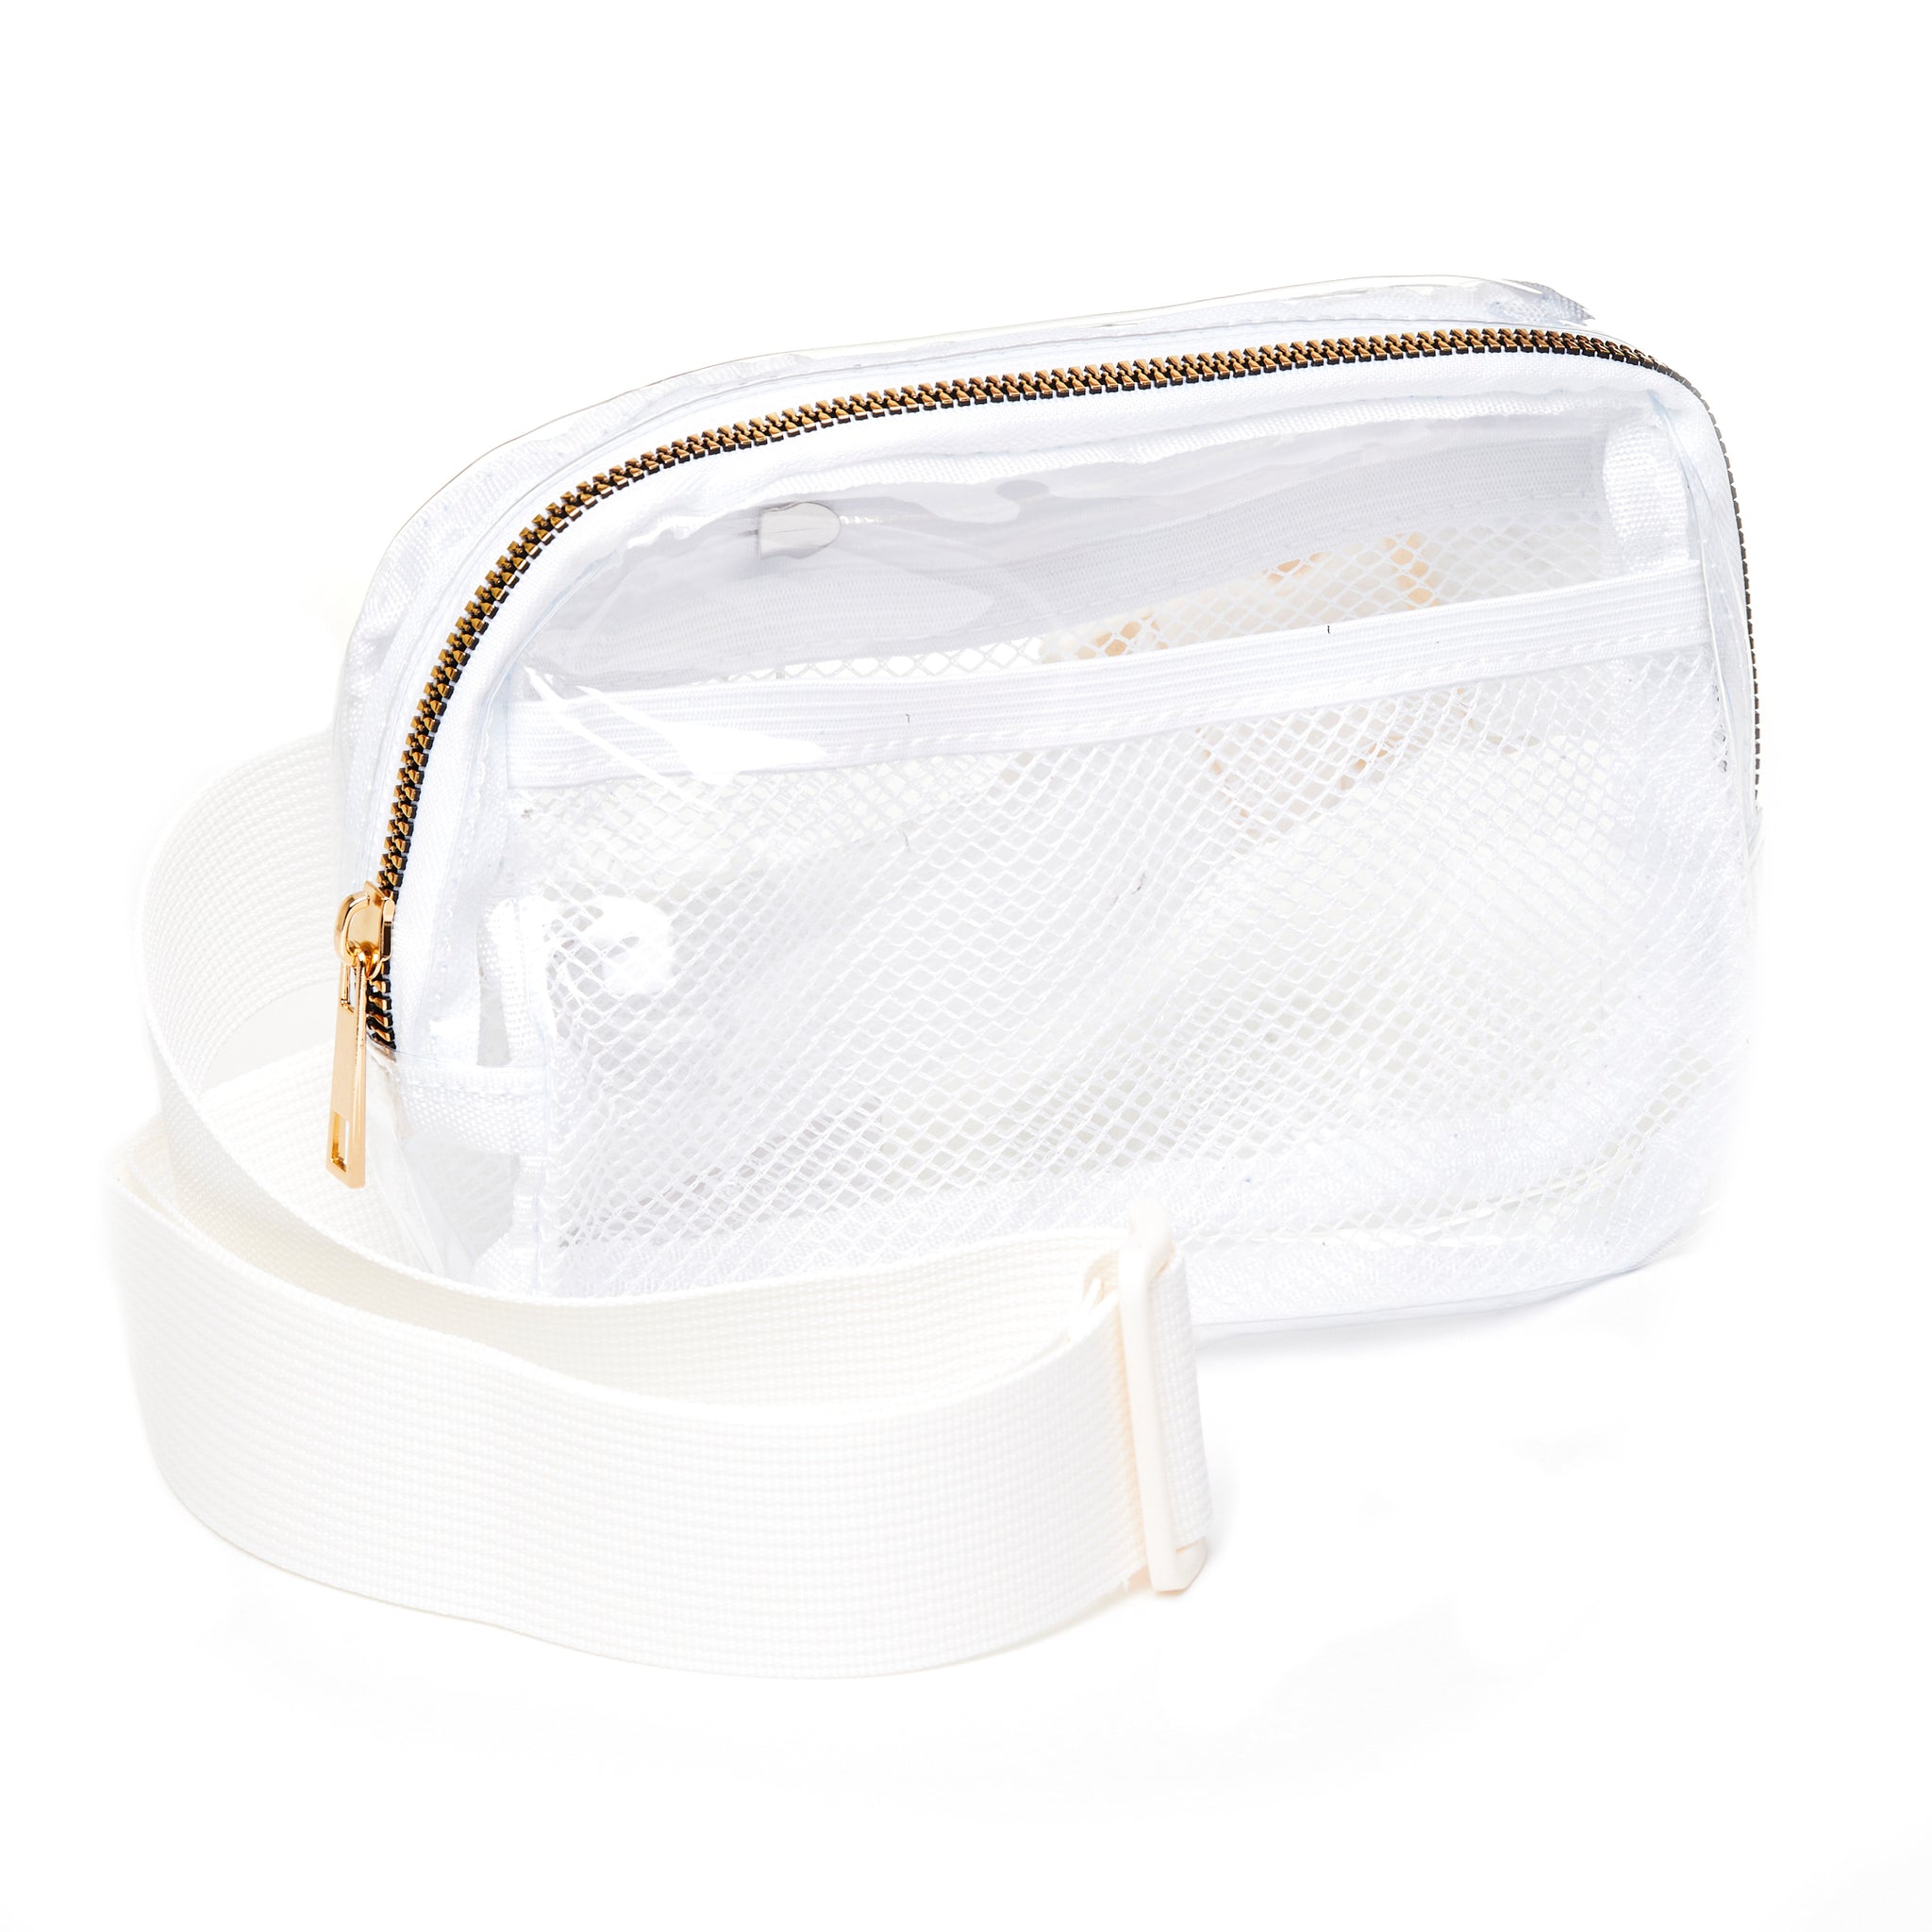 Adjustable Belt Bag - Clear White